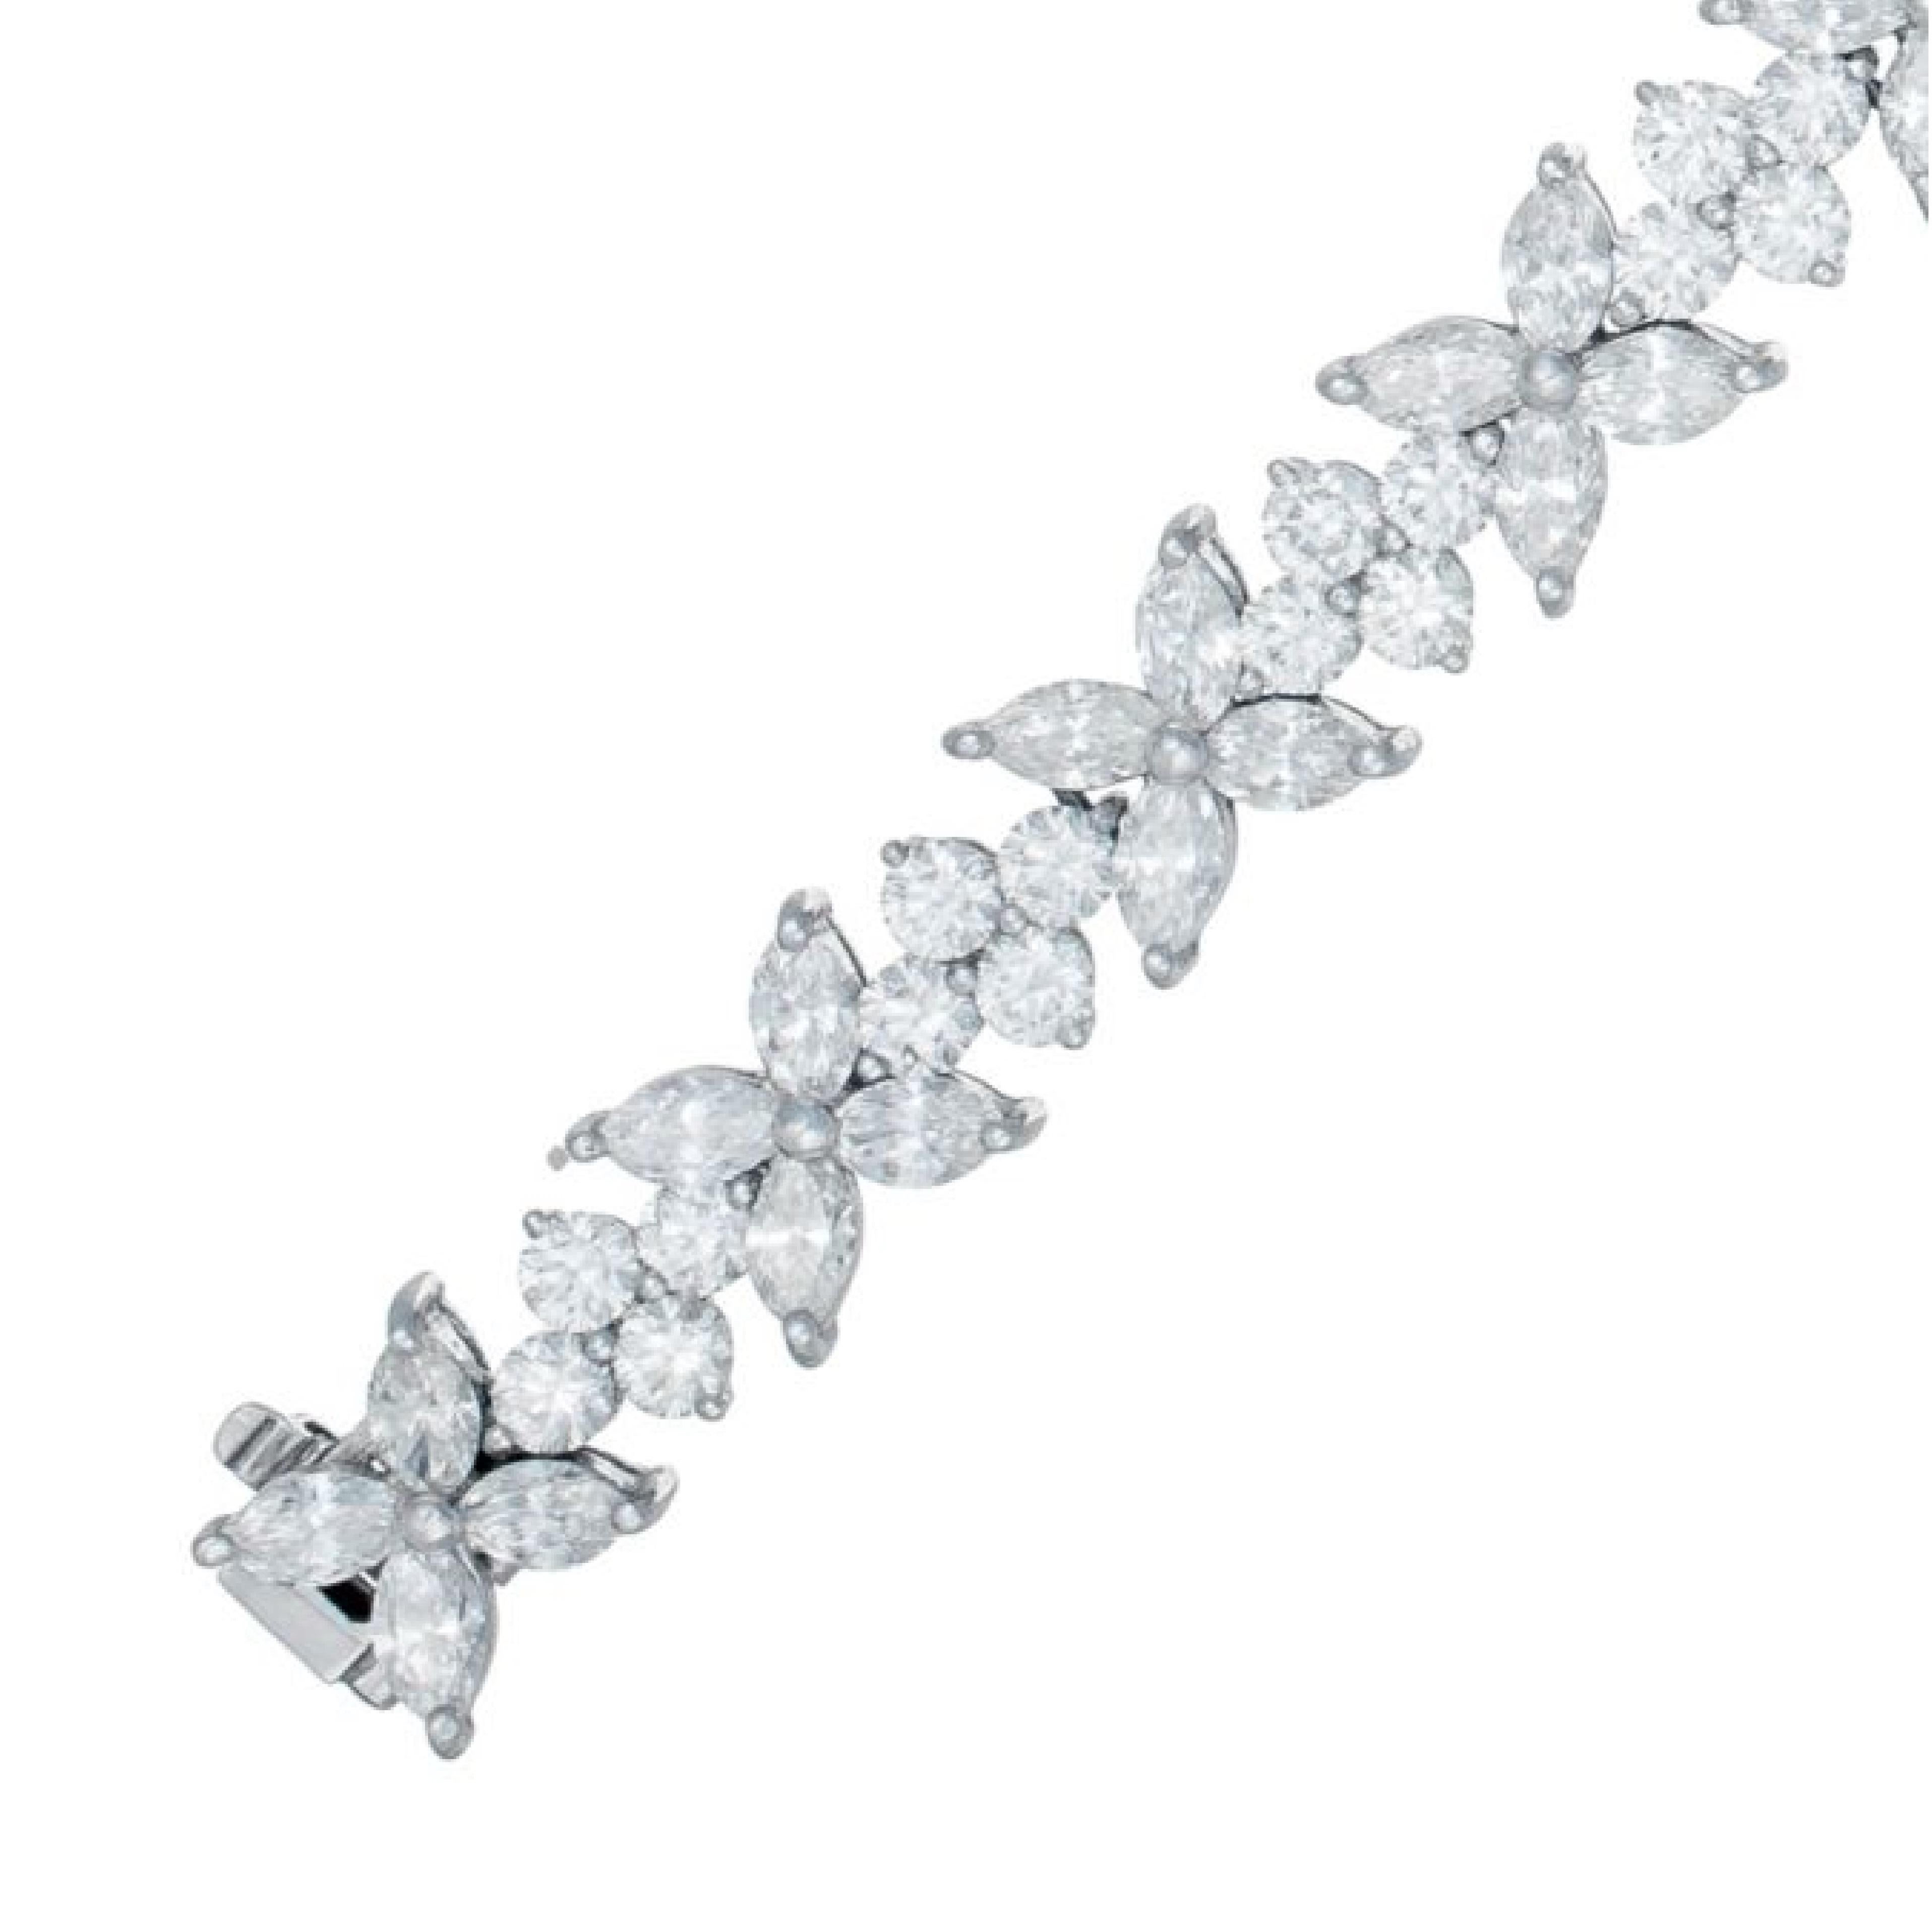 Bracelet en forme de grappe de diamants
bracelet en or blanc 18K avec 16,50 carats de diamants ronds et taille marquise en grappes de fleurs 

Longueur : 7.5